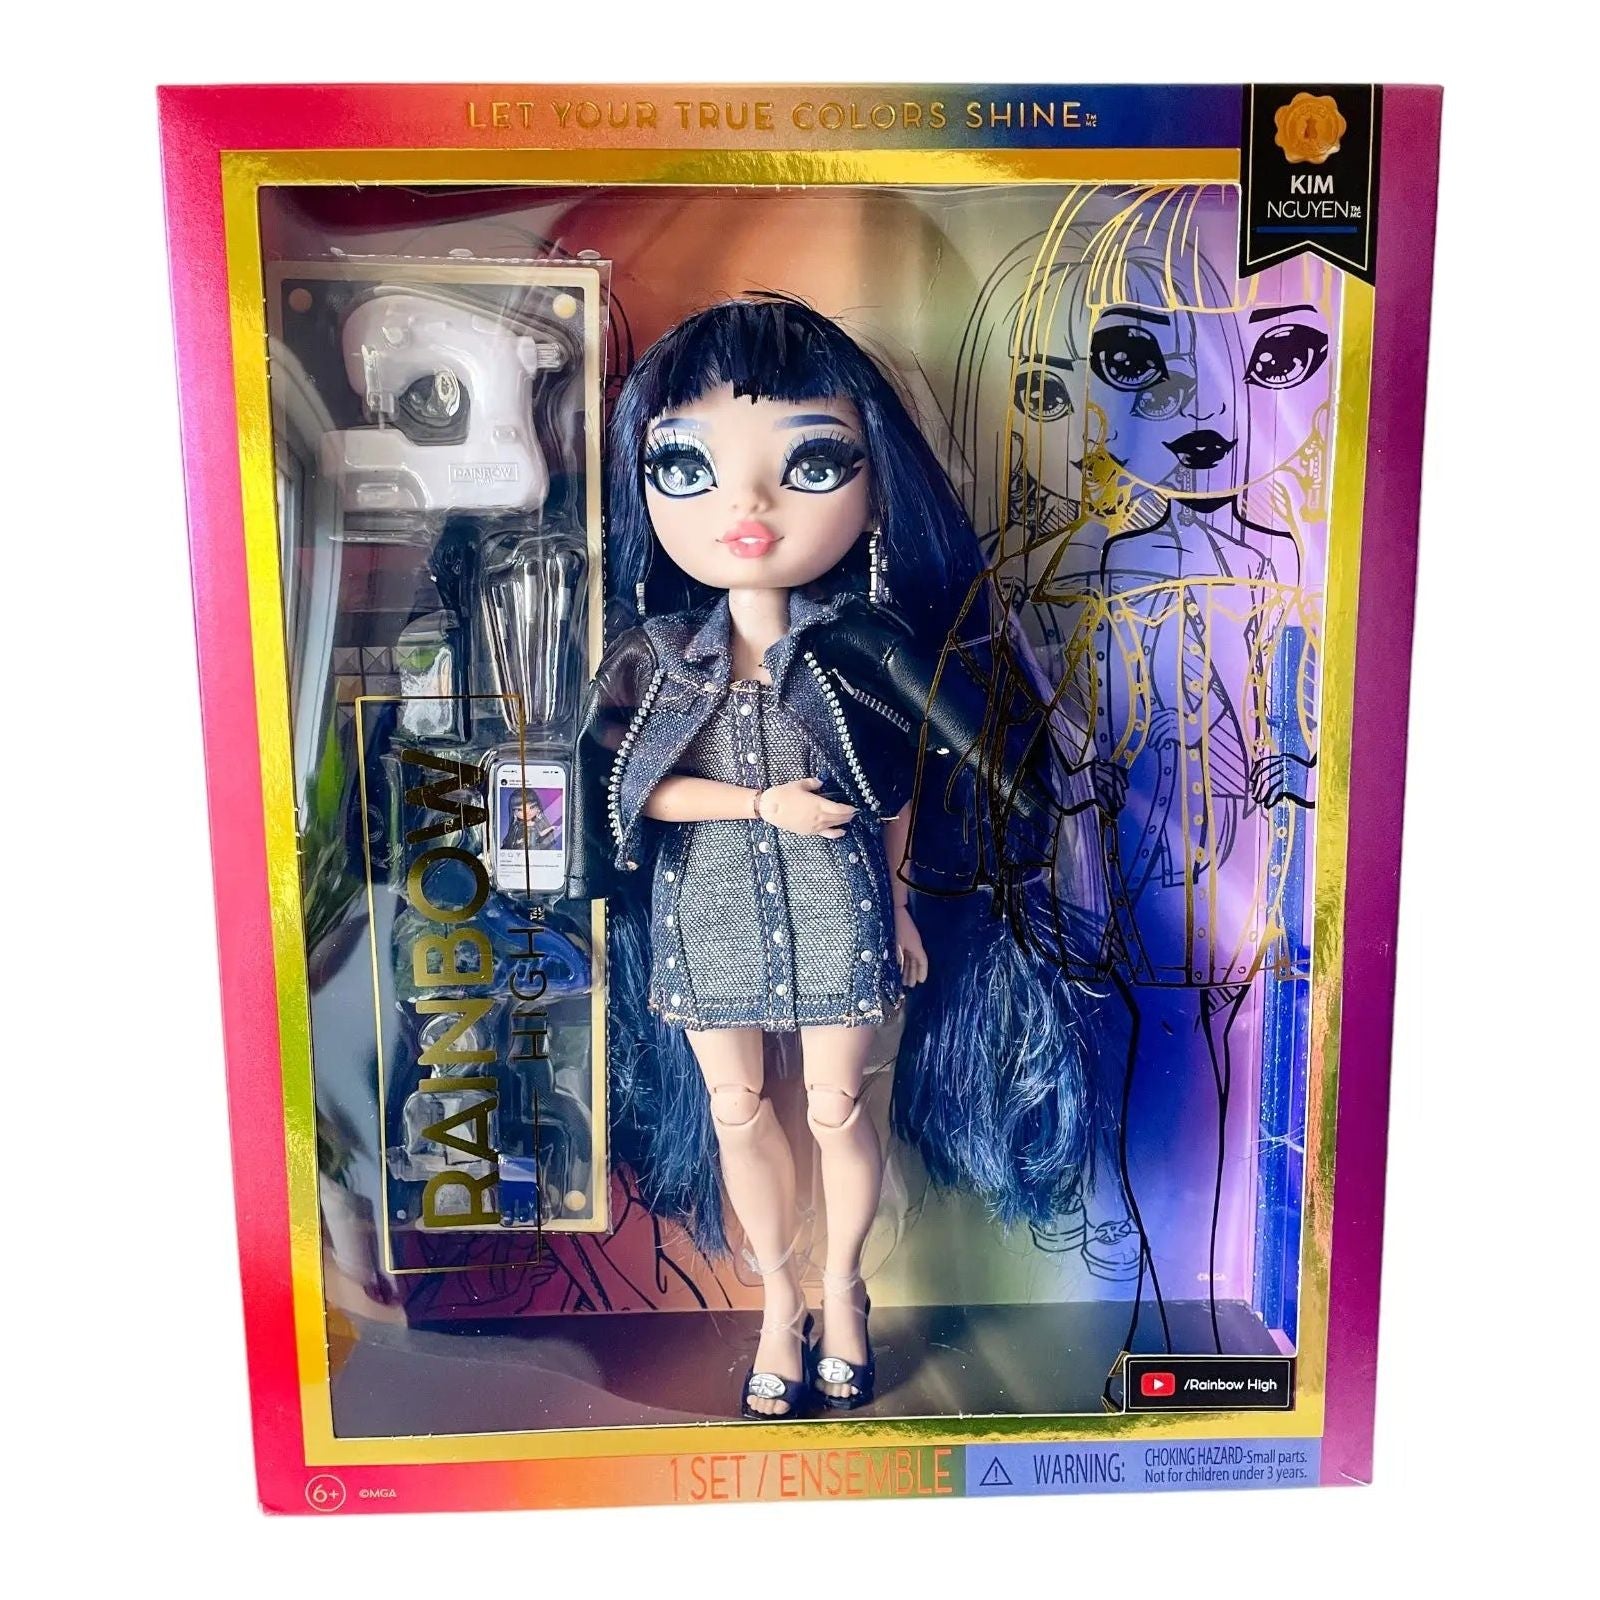 Rainbow High Blue Fashion Doll - Kim Nguyen